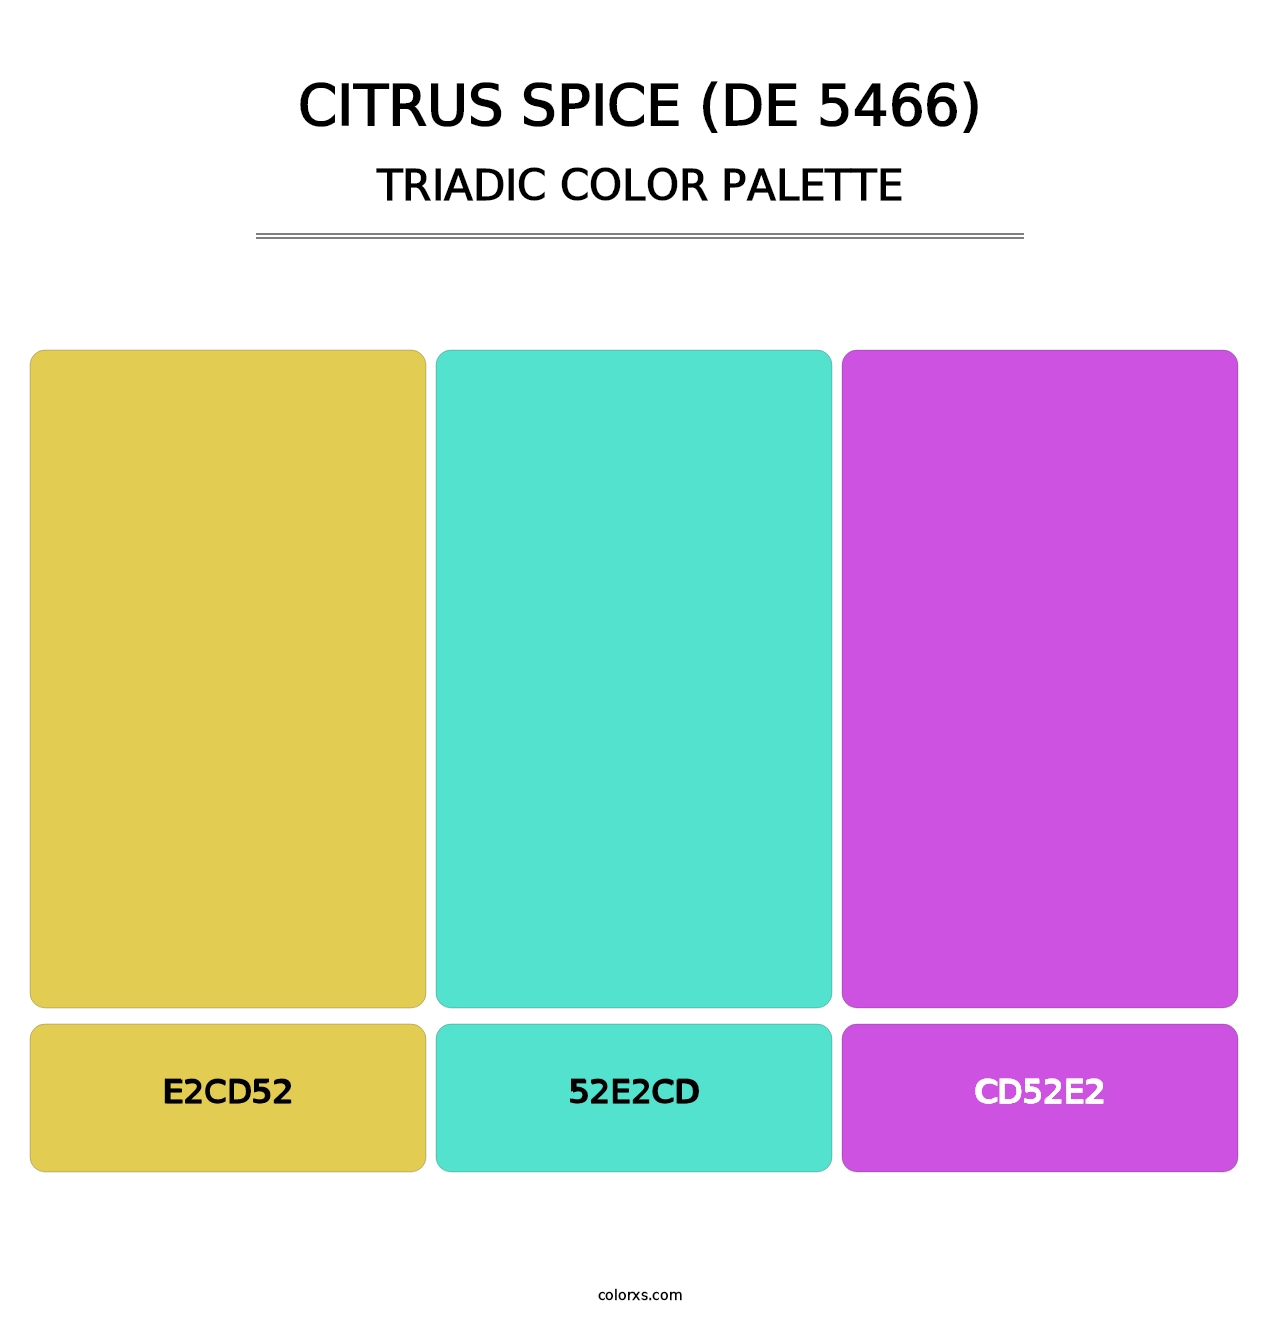 Citrus Spice (DE 5466) - Triadic Color Palette